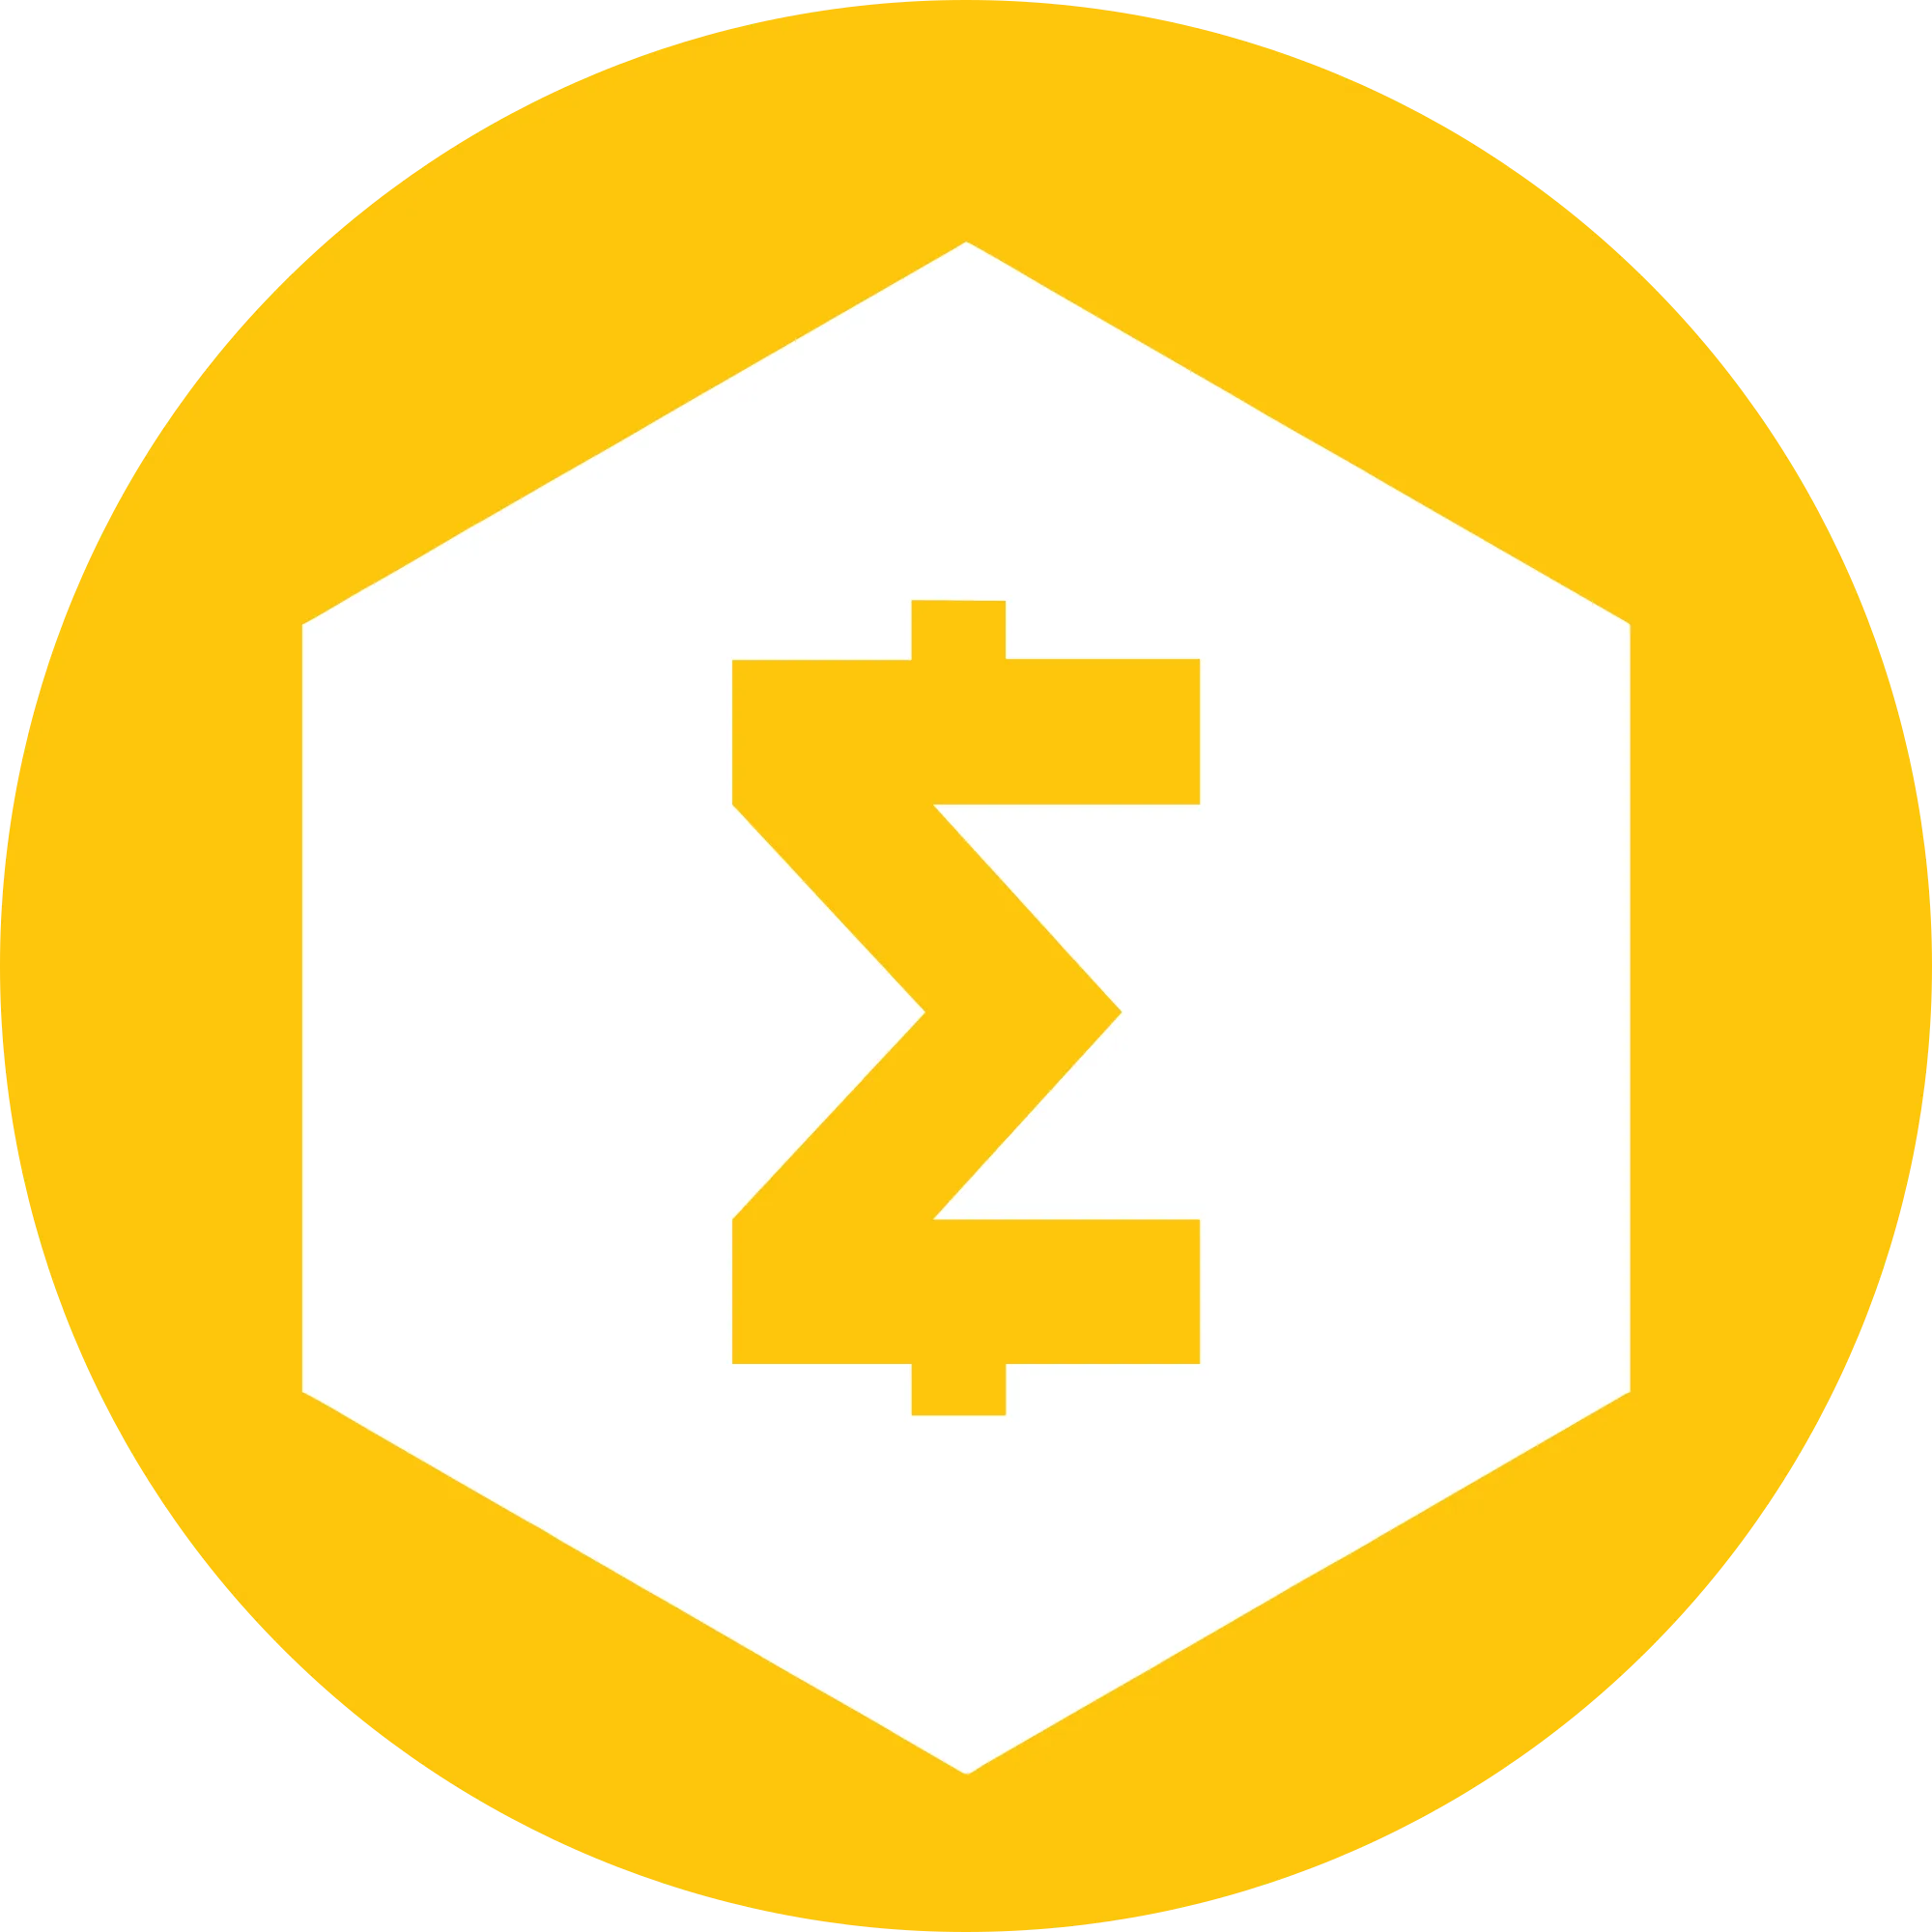 SmartCash logo in png format